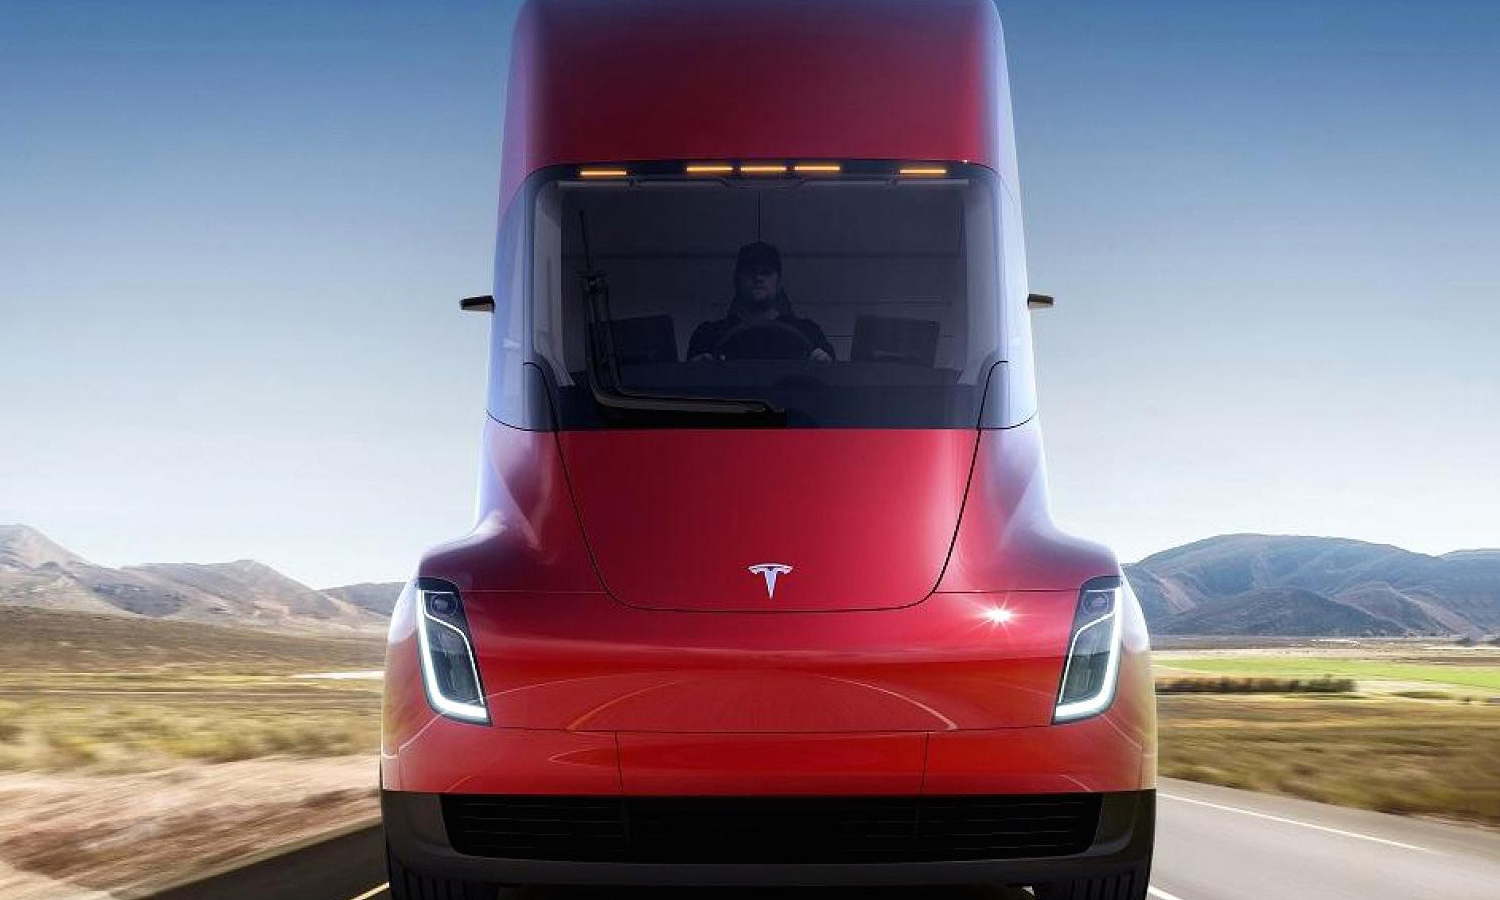 沃尔玛已承诺订购 15 辆 Tesla 电动卡车